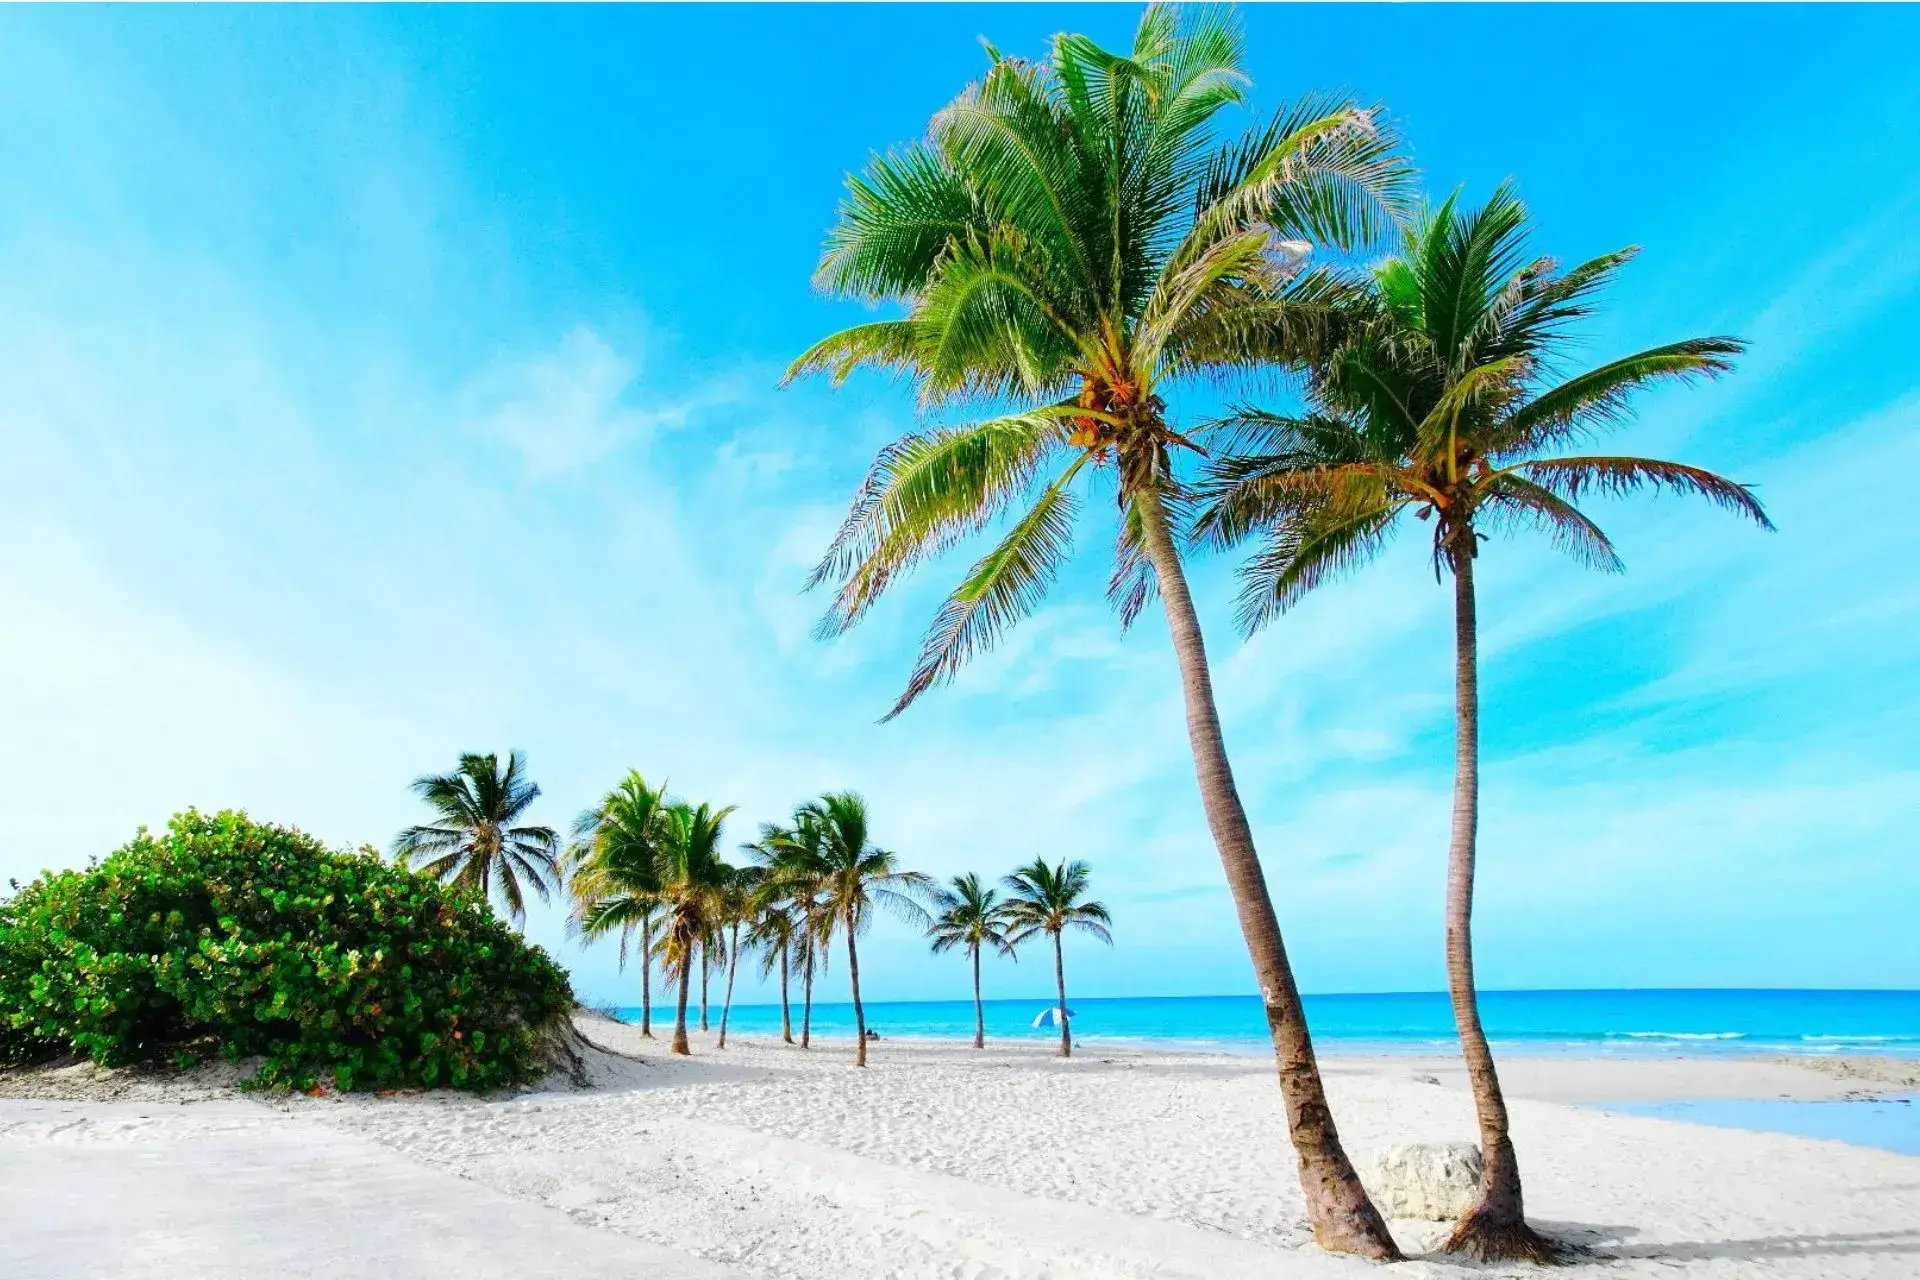 Playa de arena blanca y palmeras